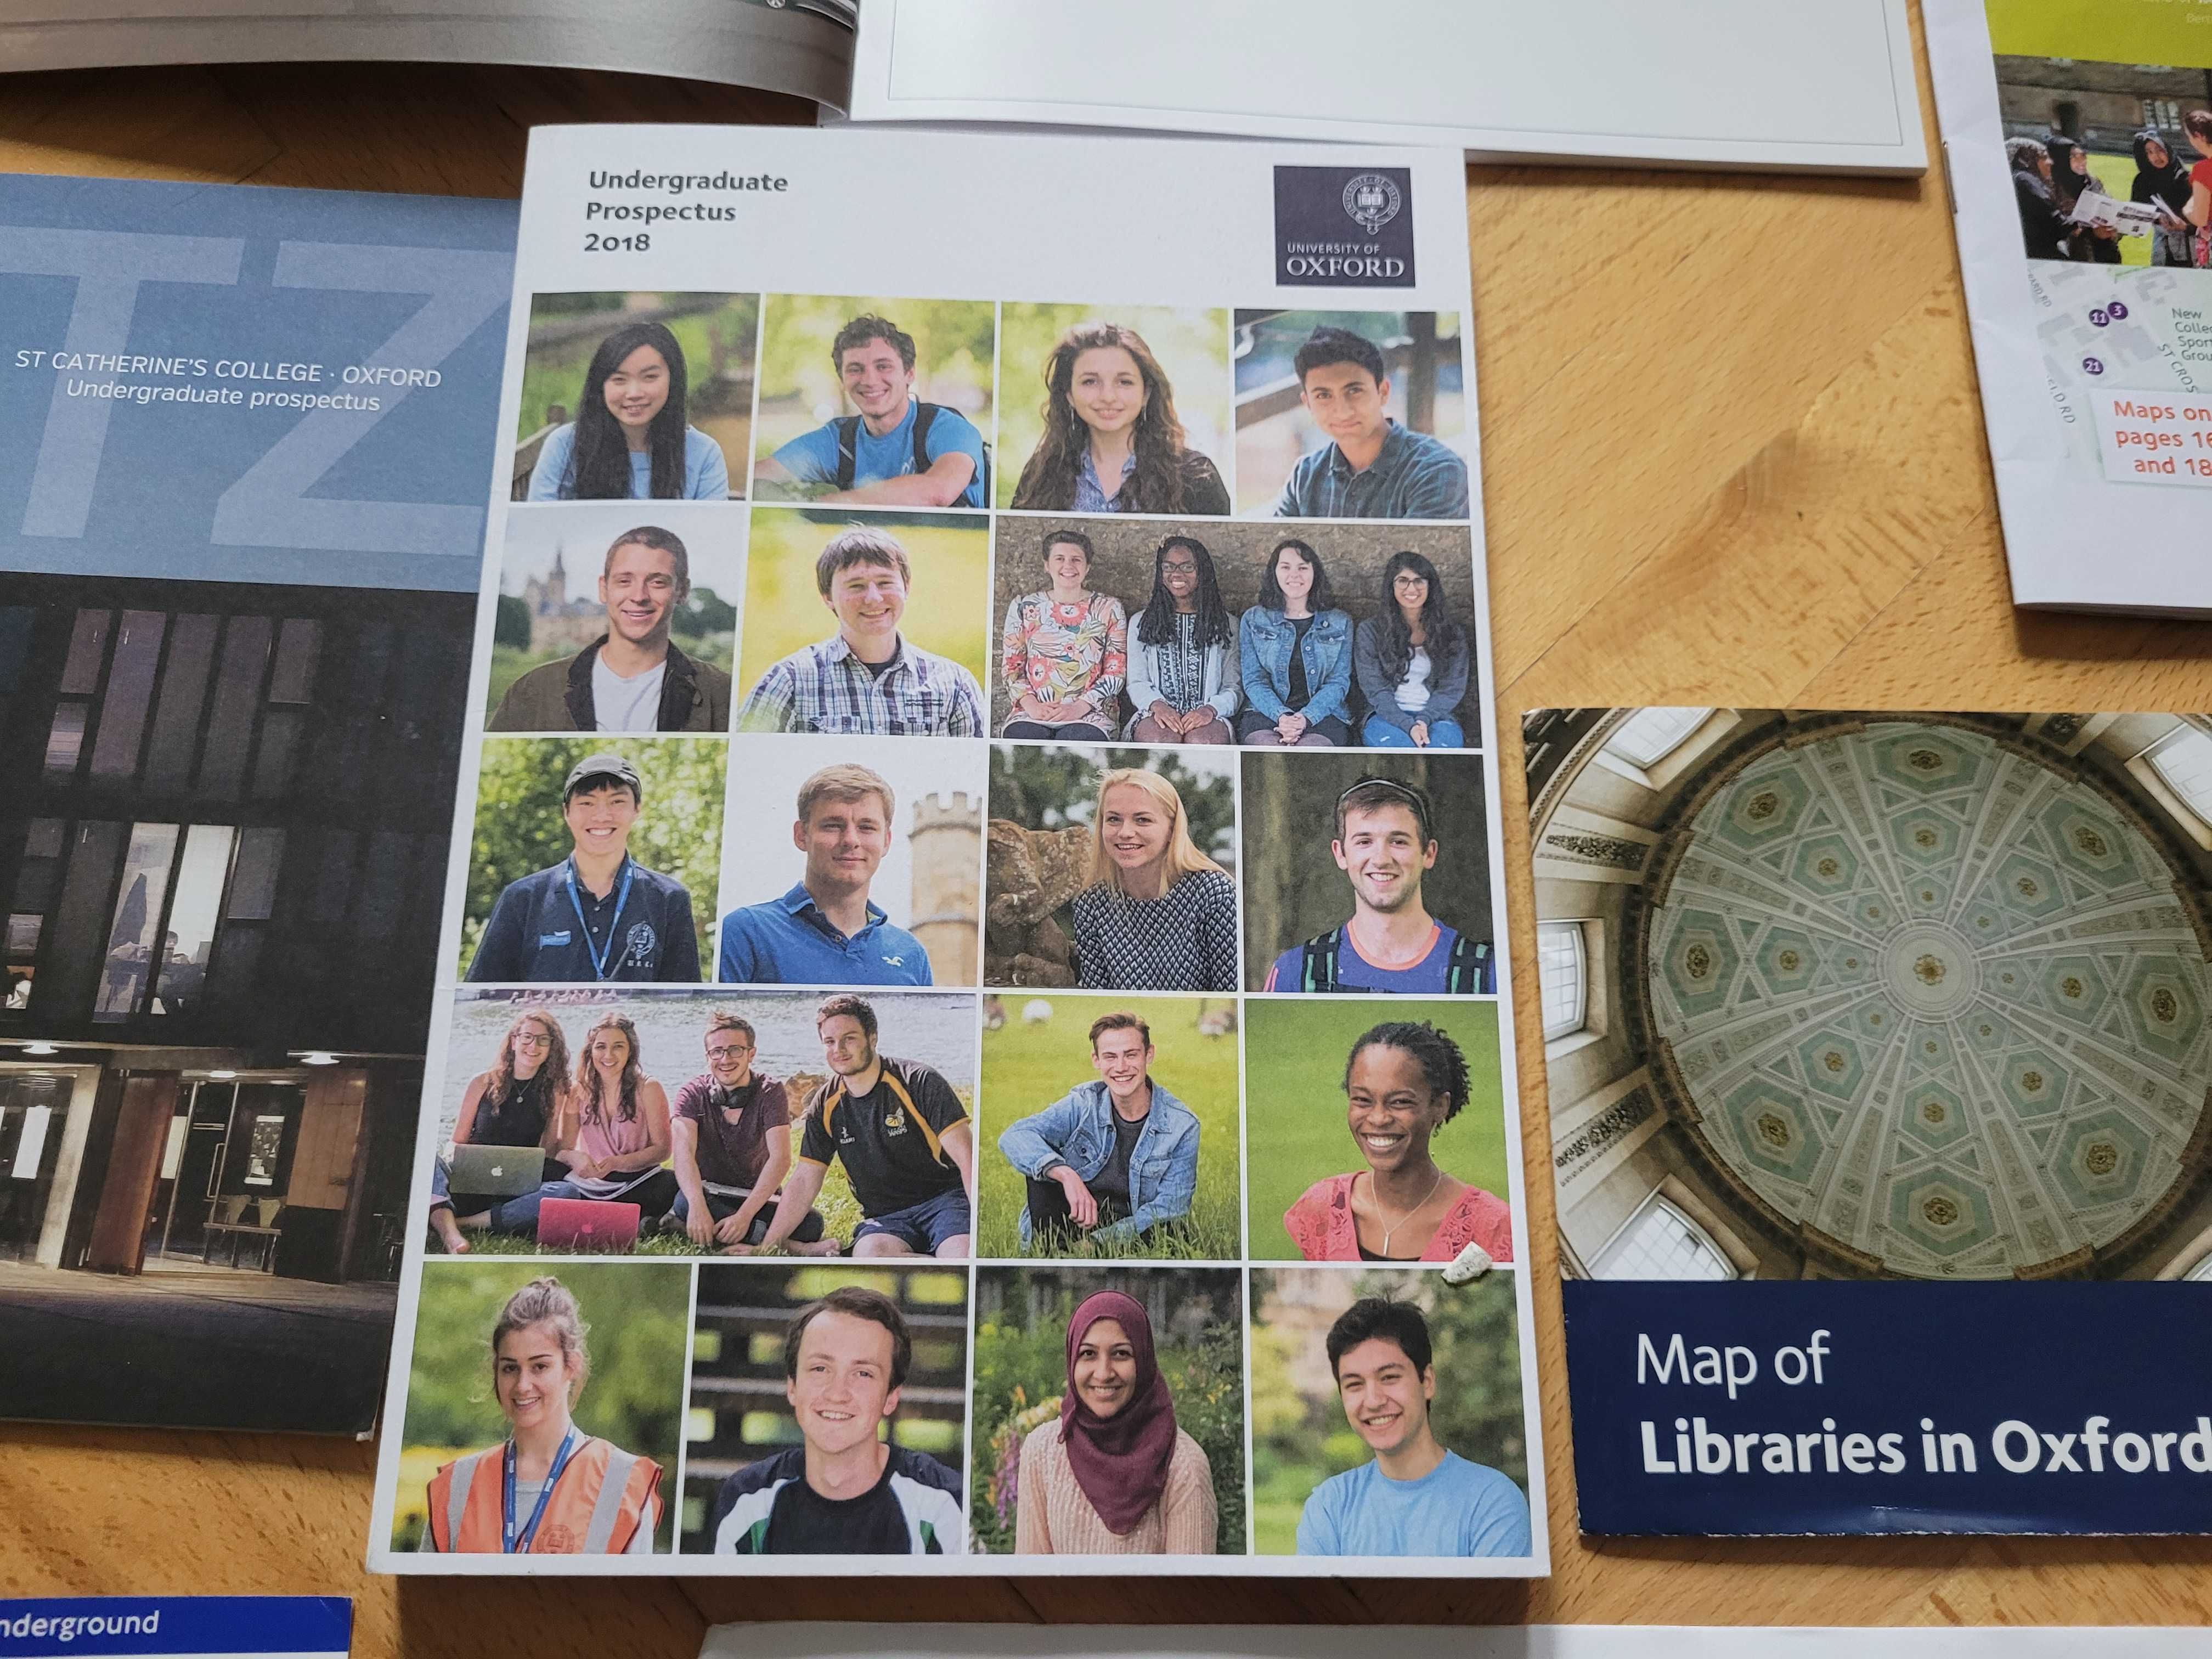 Oxford broszury info mapy gazety pakiet przywitalny